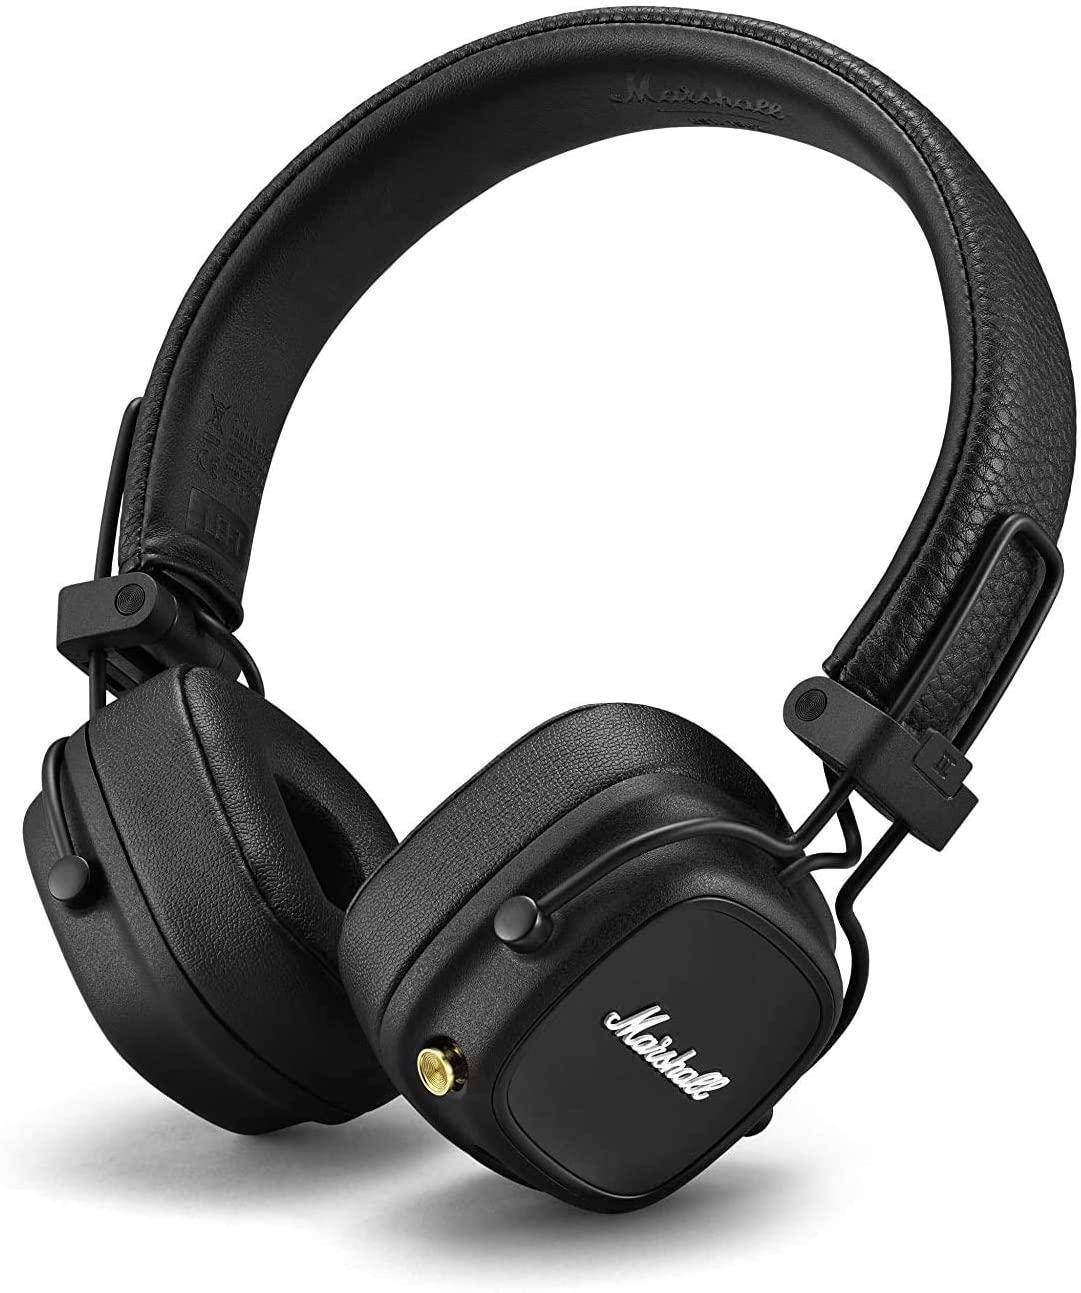 Marshall Major IV On Ear Bluetooth Headphones zoom image